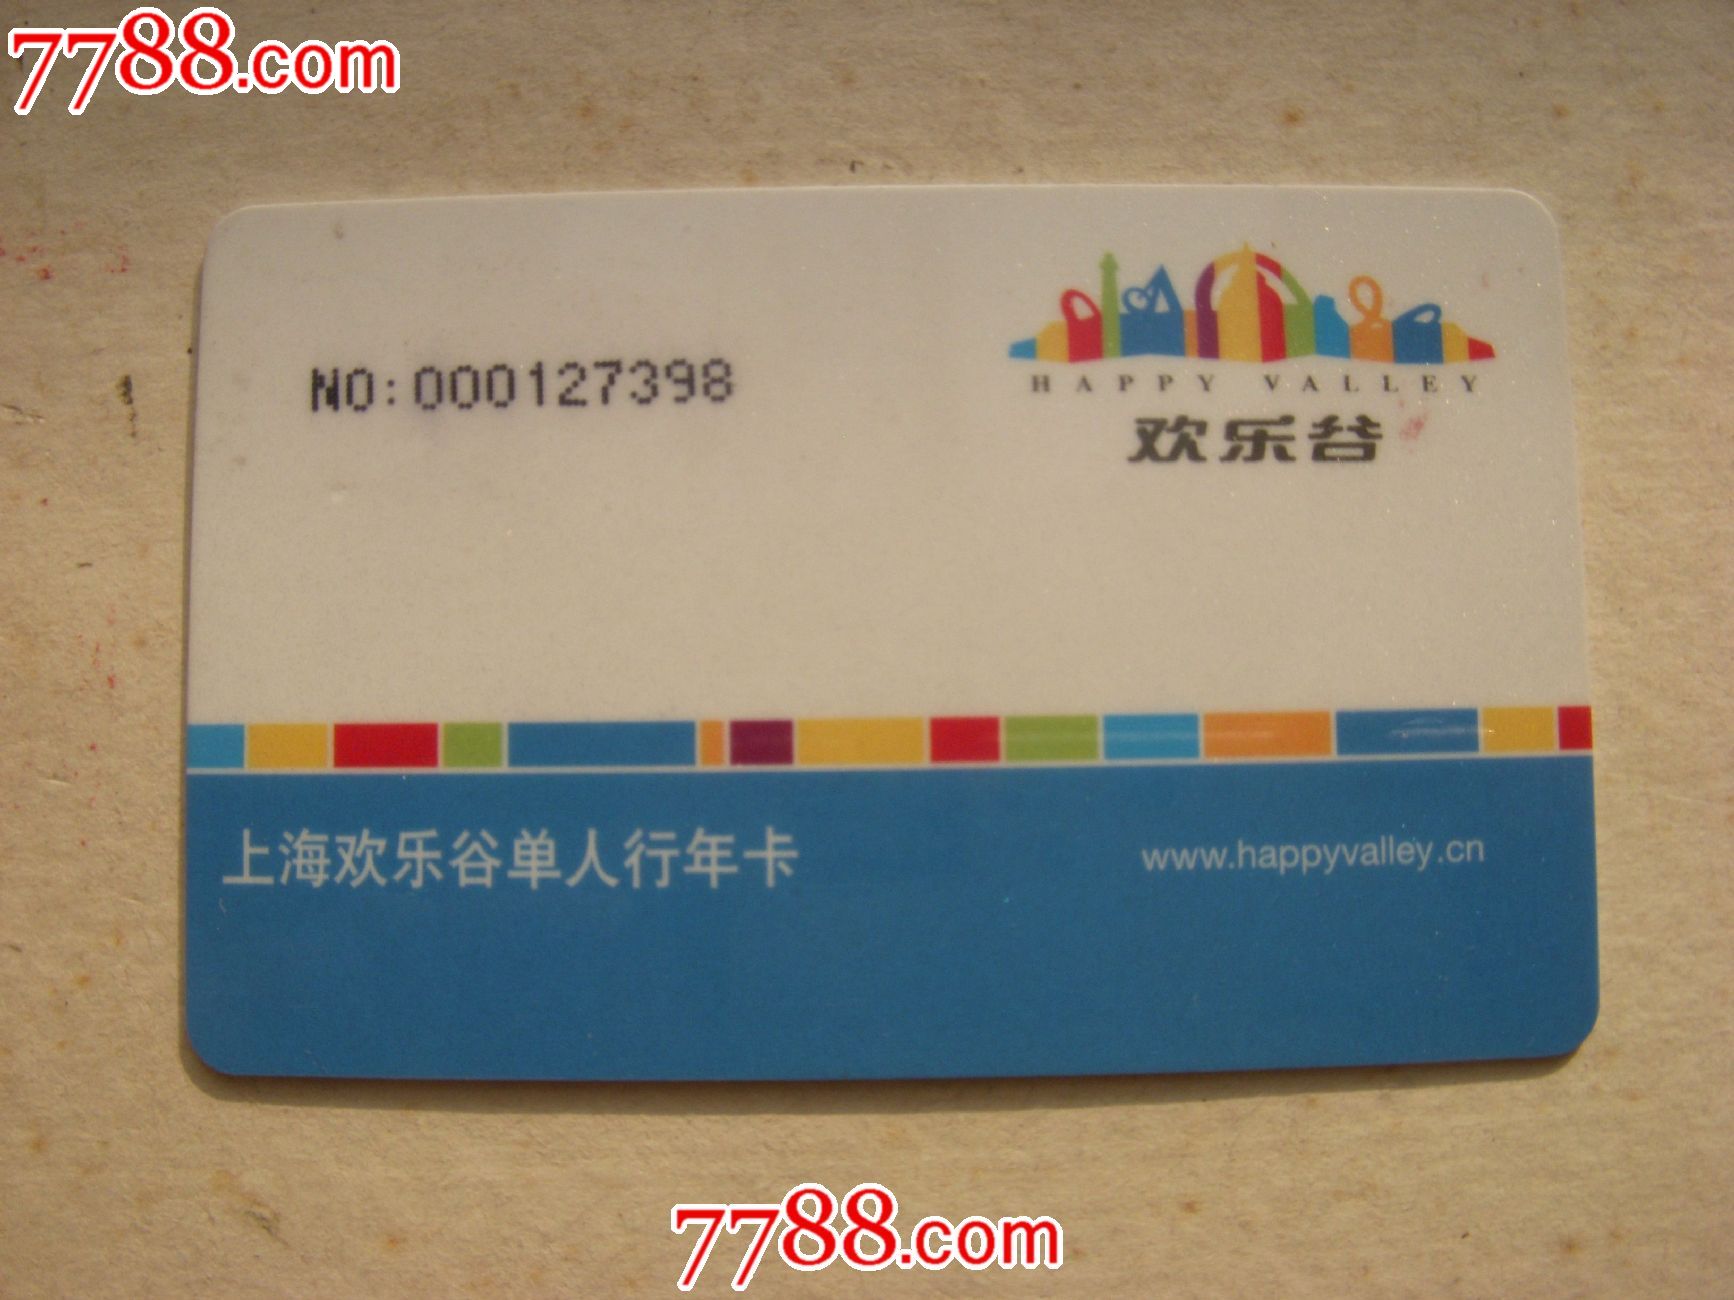 上海欢乐谷单人行年卡-价格:30元-se20513012